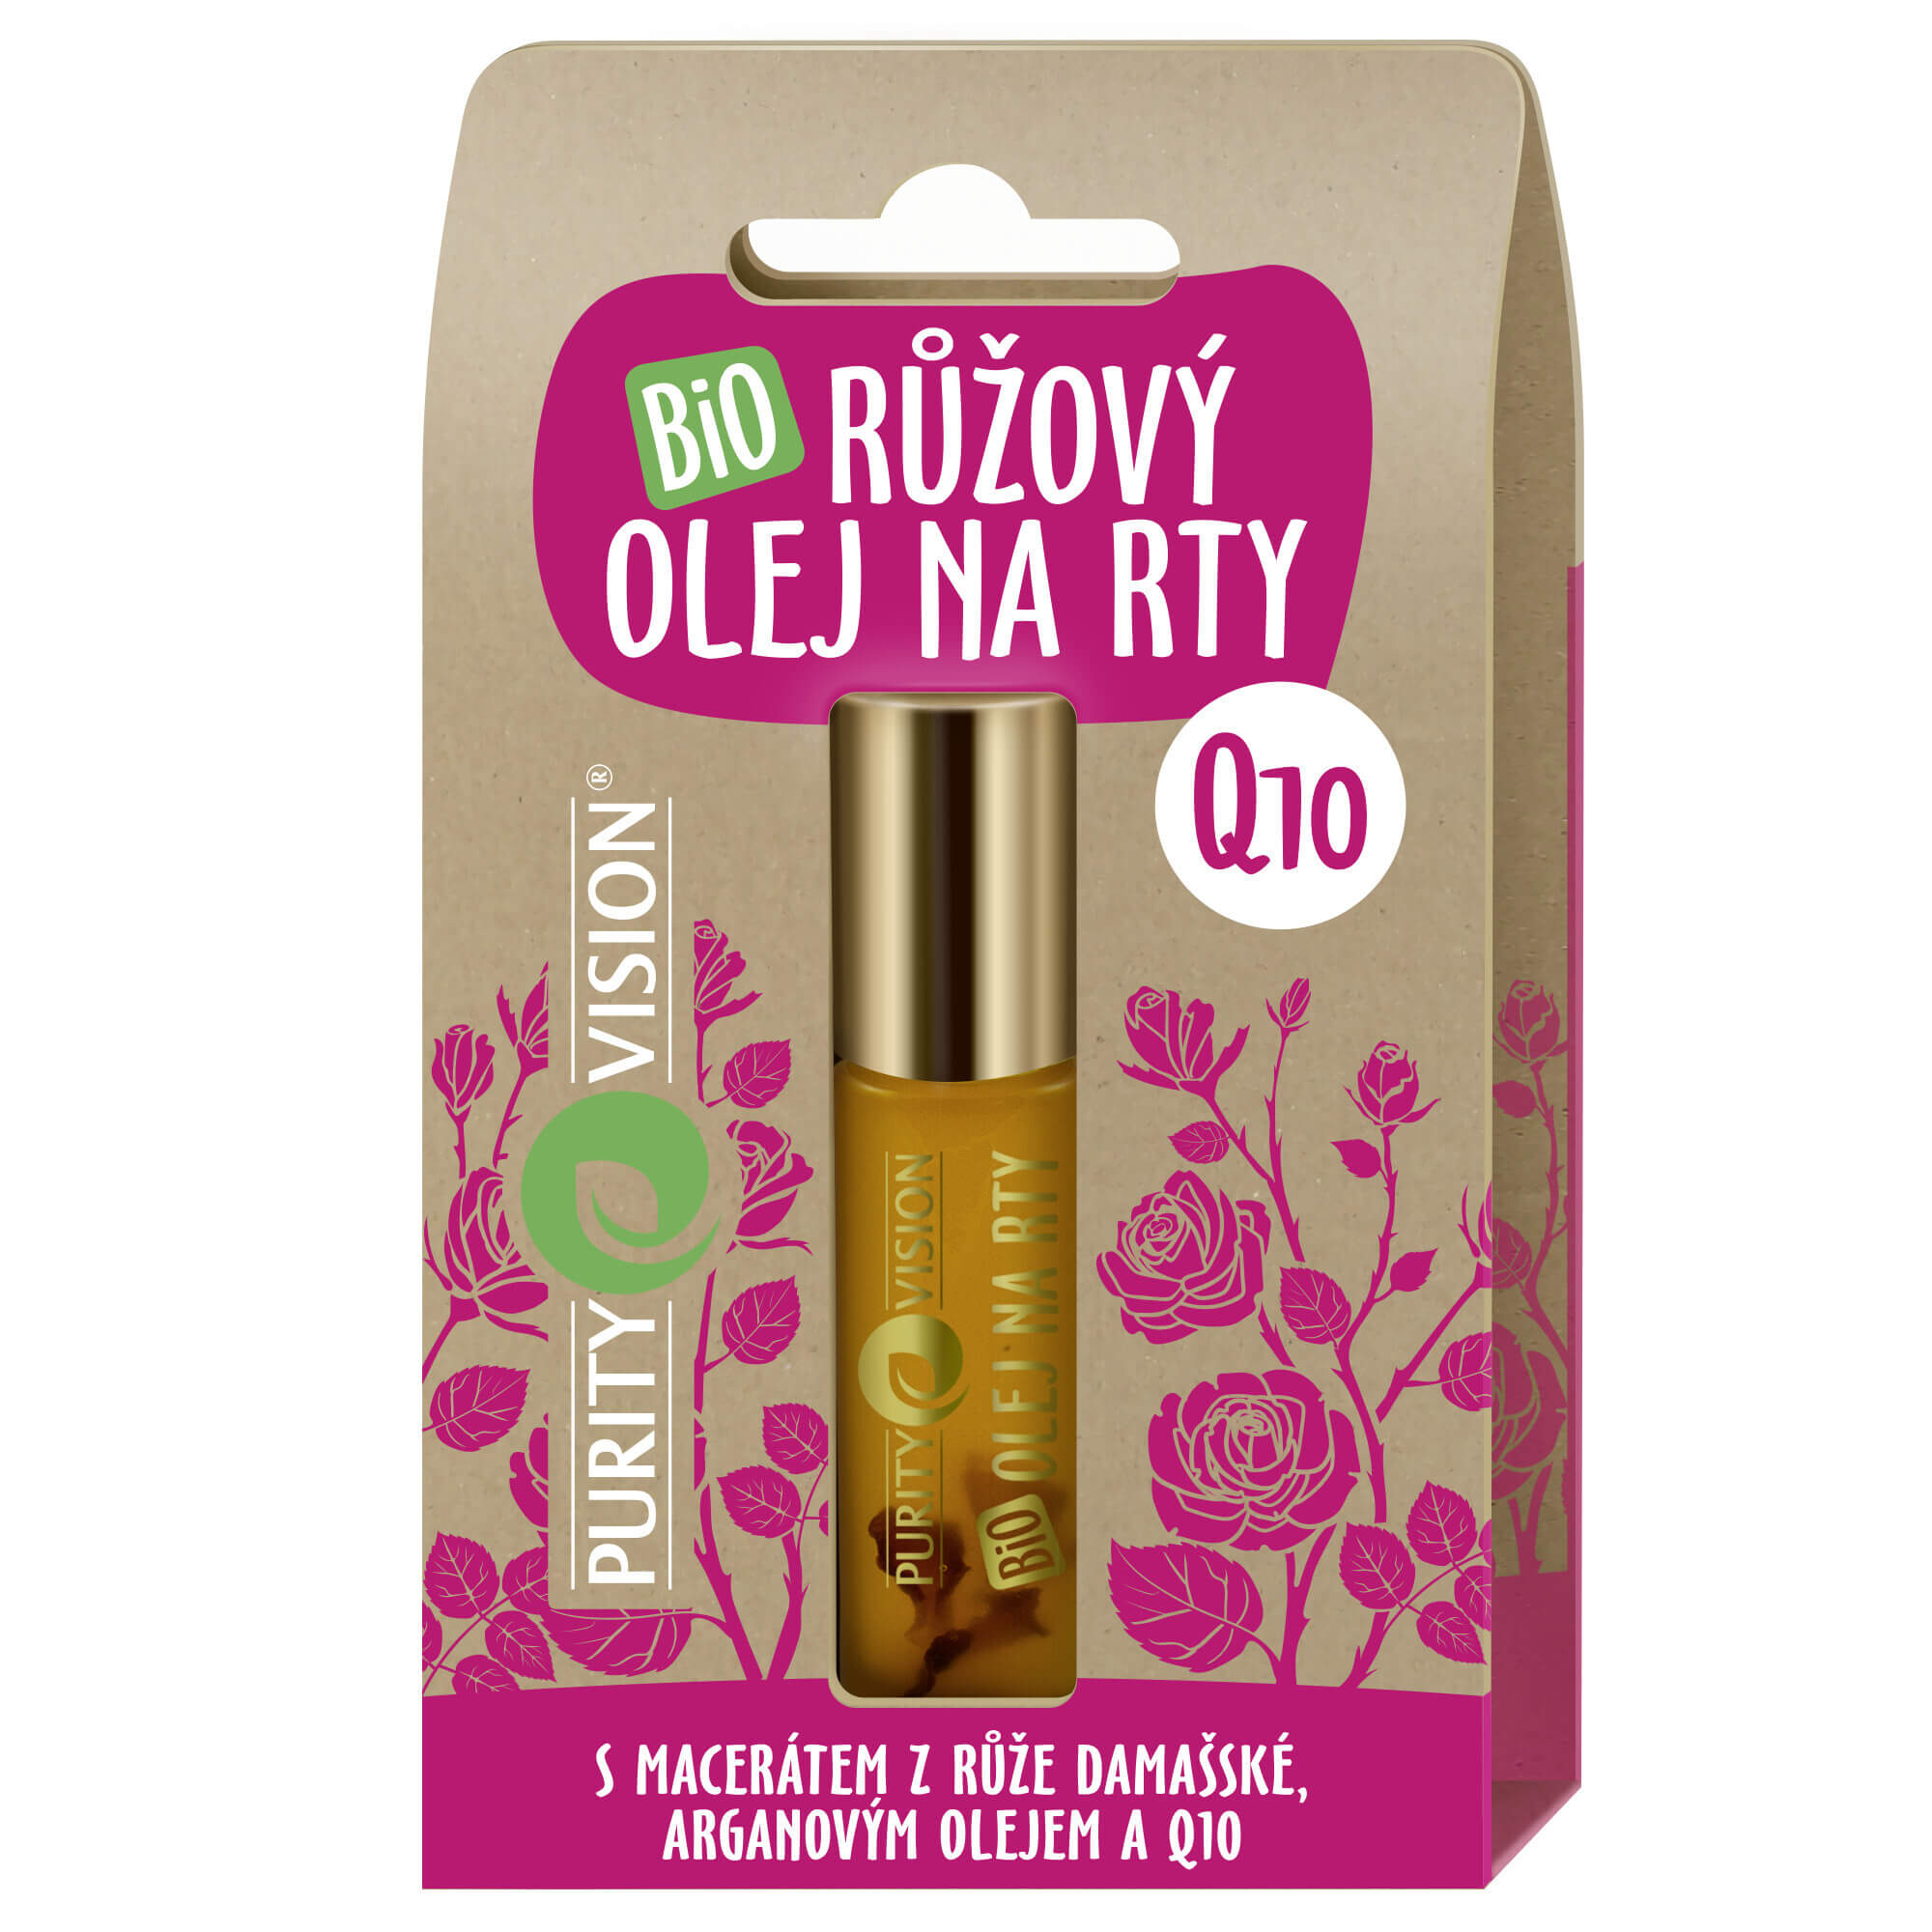 Purity Vision Bio Růžový olej na rty Q10 10 ml